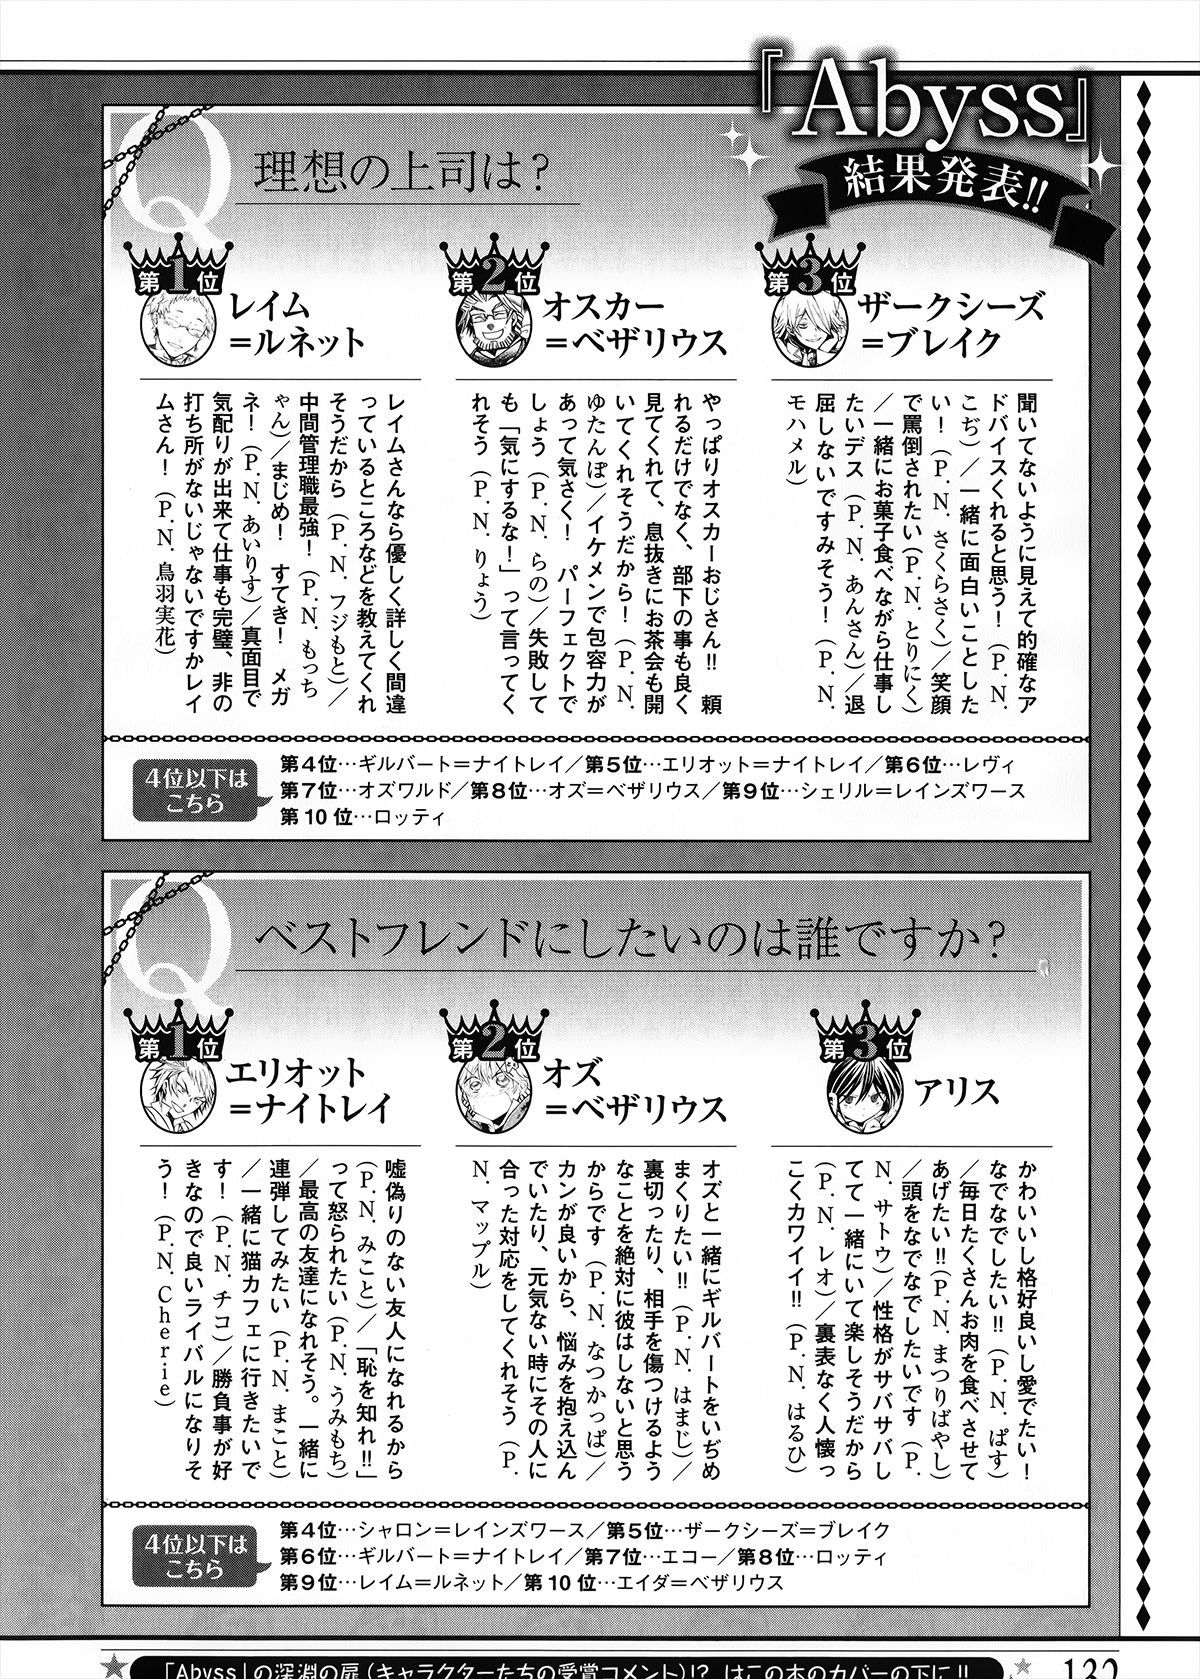 Pandora Hearts Guidebook 24+1: Last Dance パンドラハーツ オフィシャルガイド 24 + 1 ~Last Dance! 136